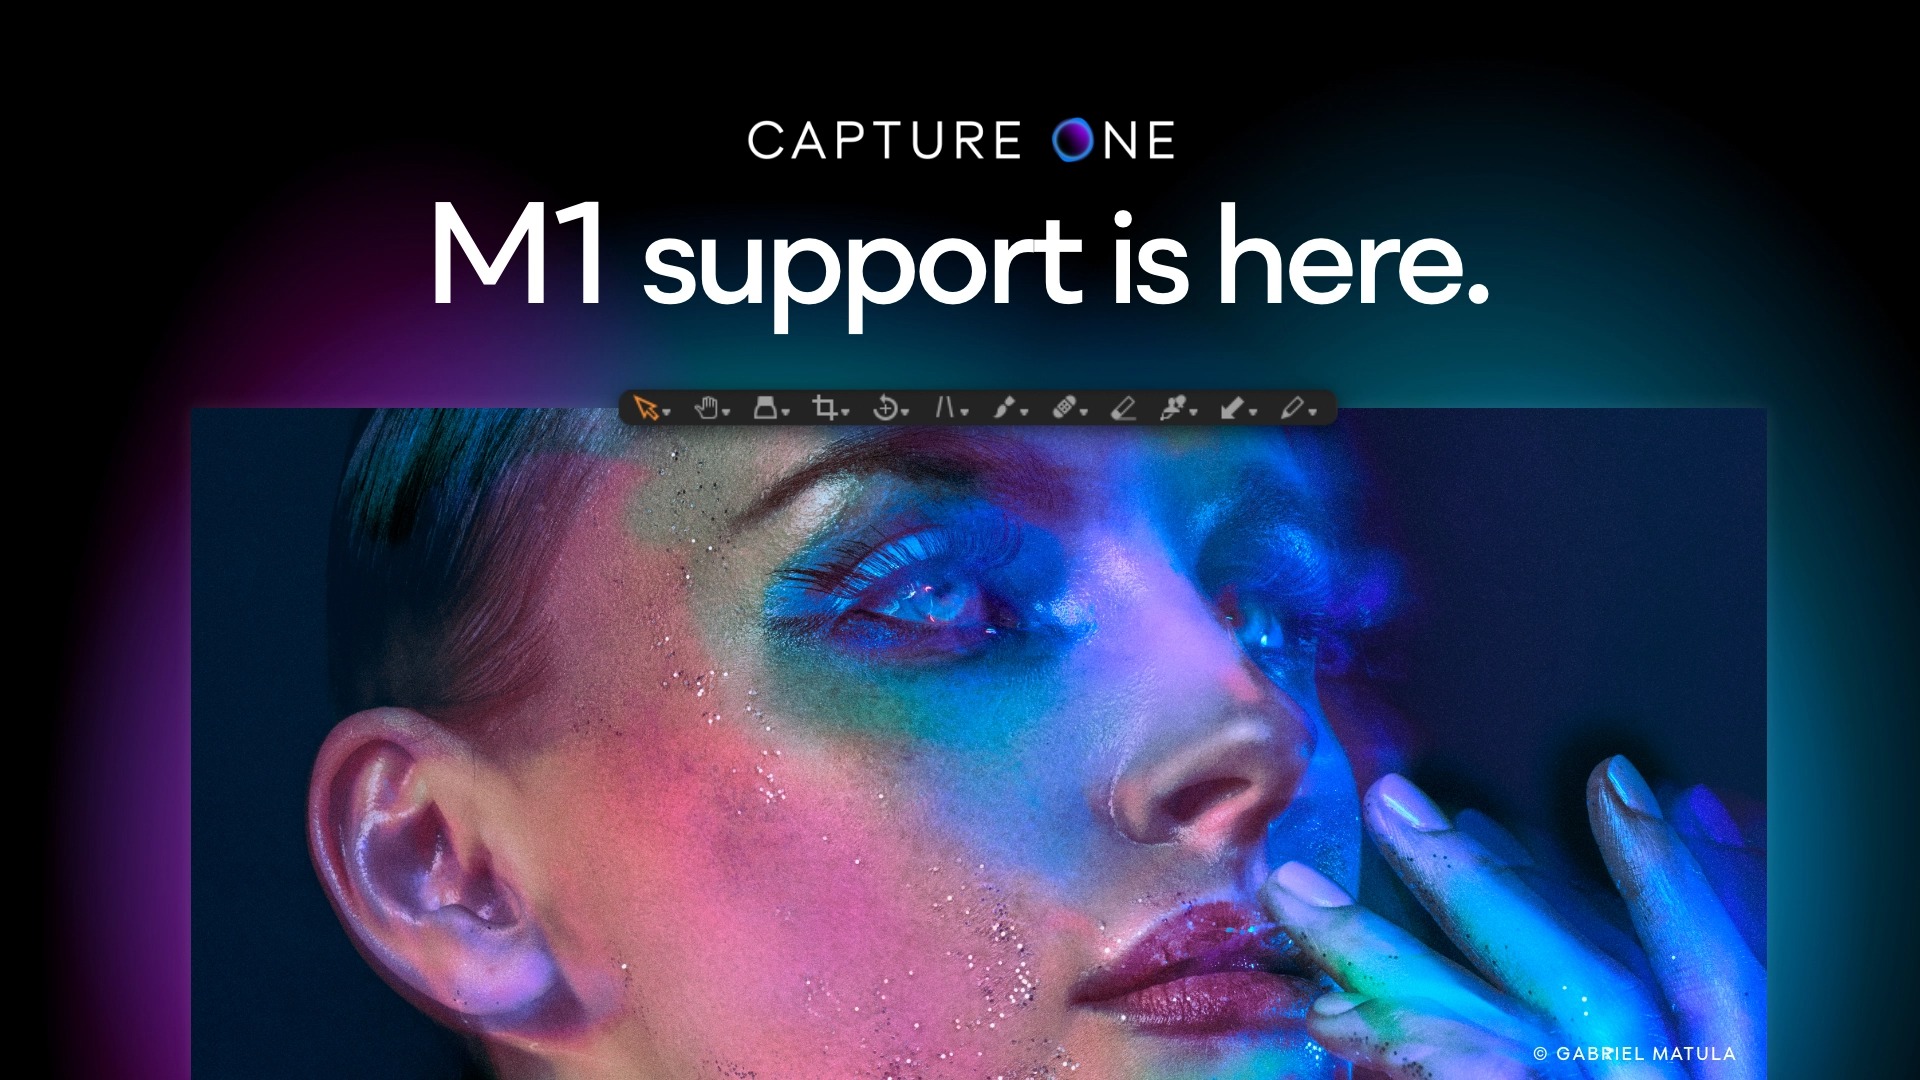 Capture One tung phiên bản hỗ trợ gốc cho máy Mac chạy M1